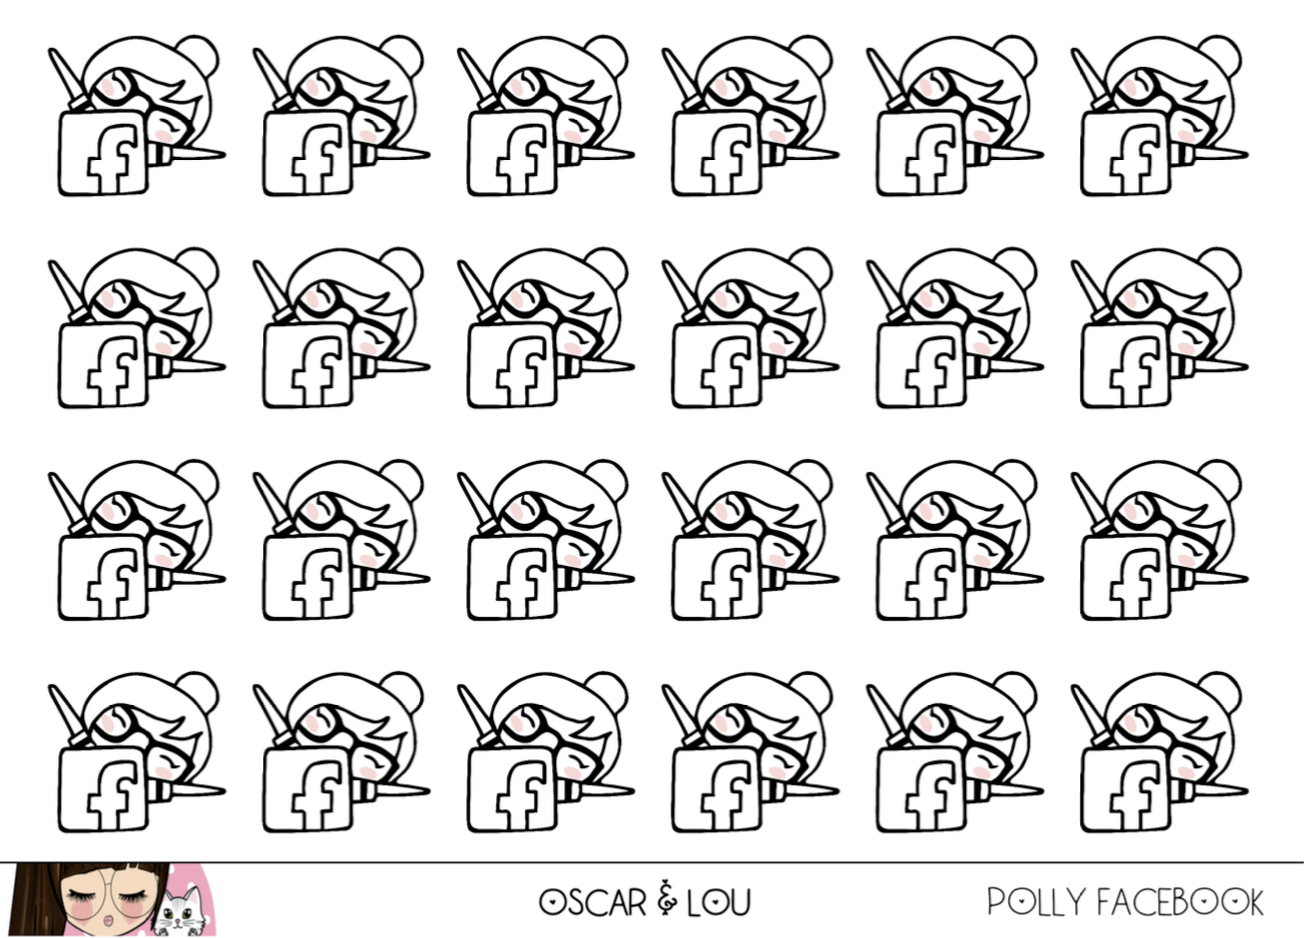 Mini Sheet  - Polly Facebook